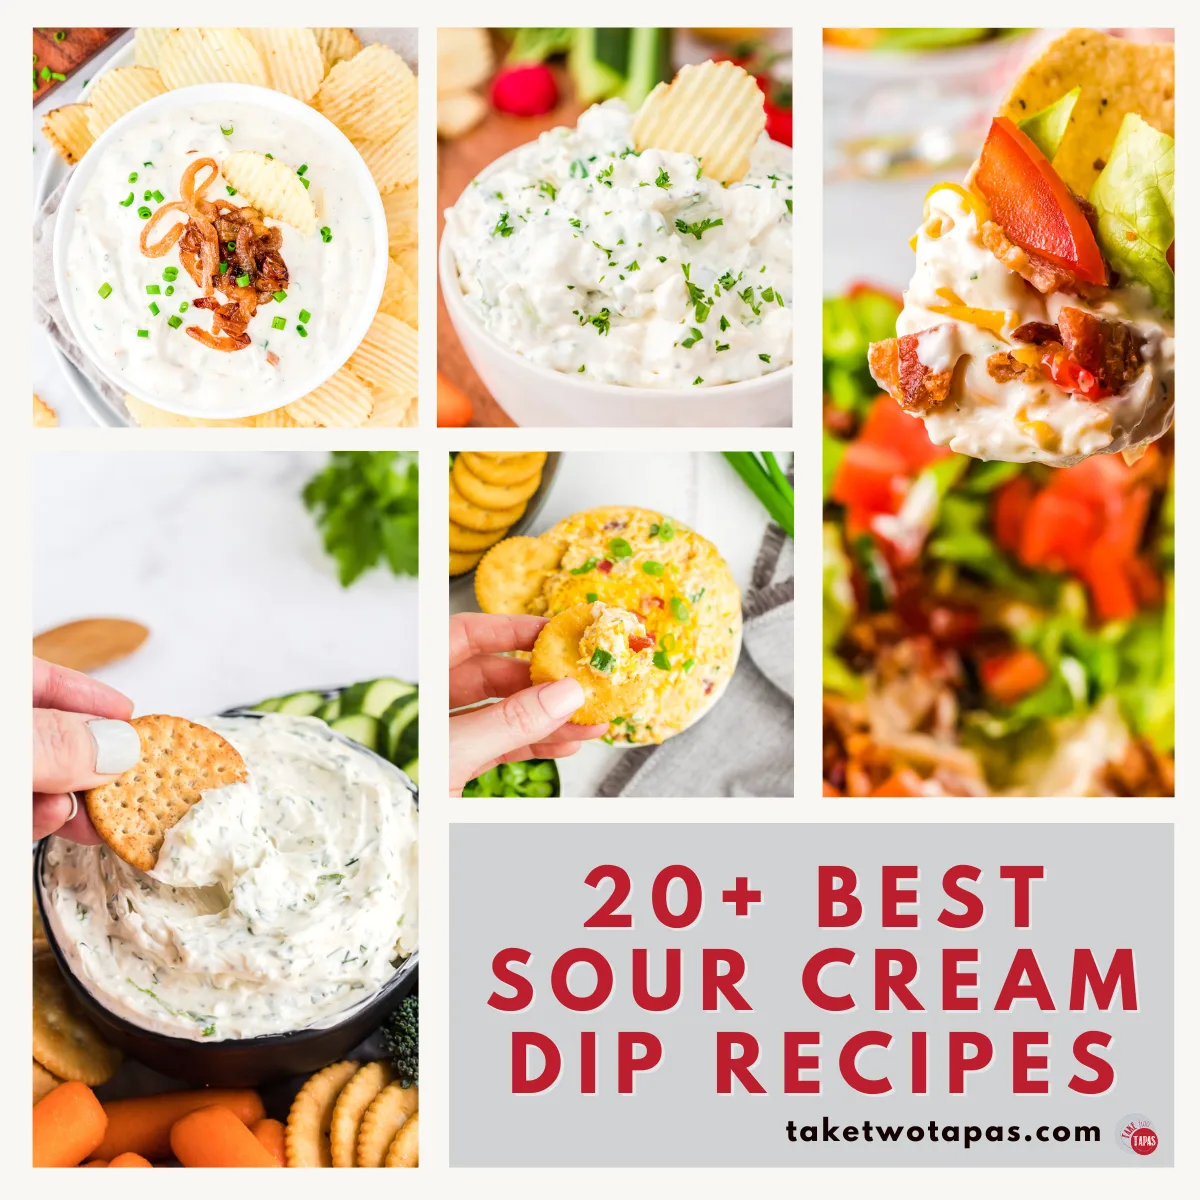 sour cream based dips